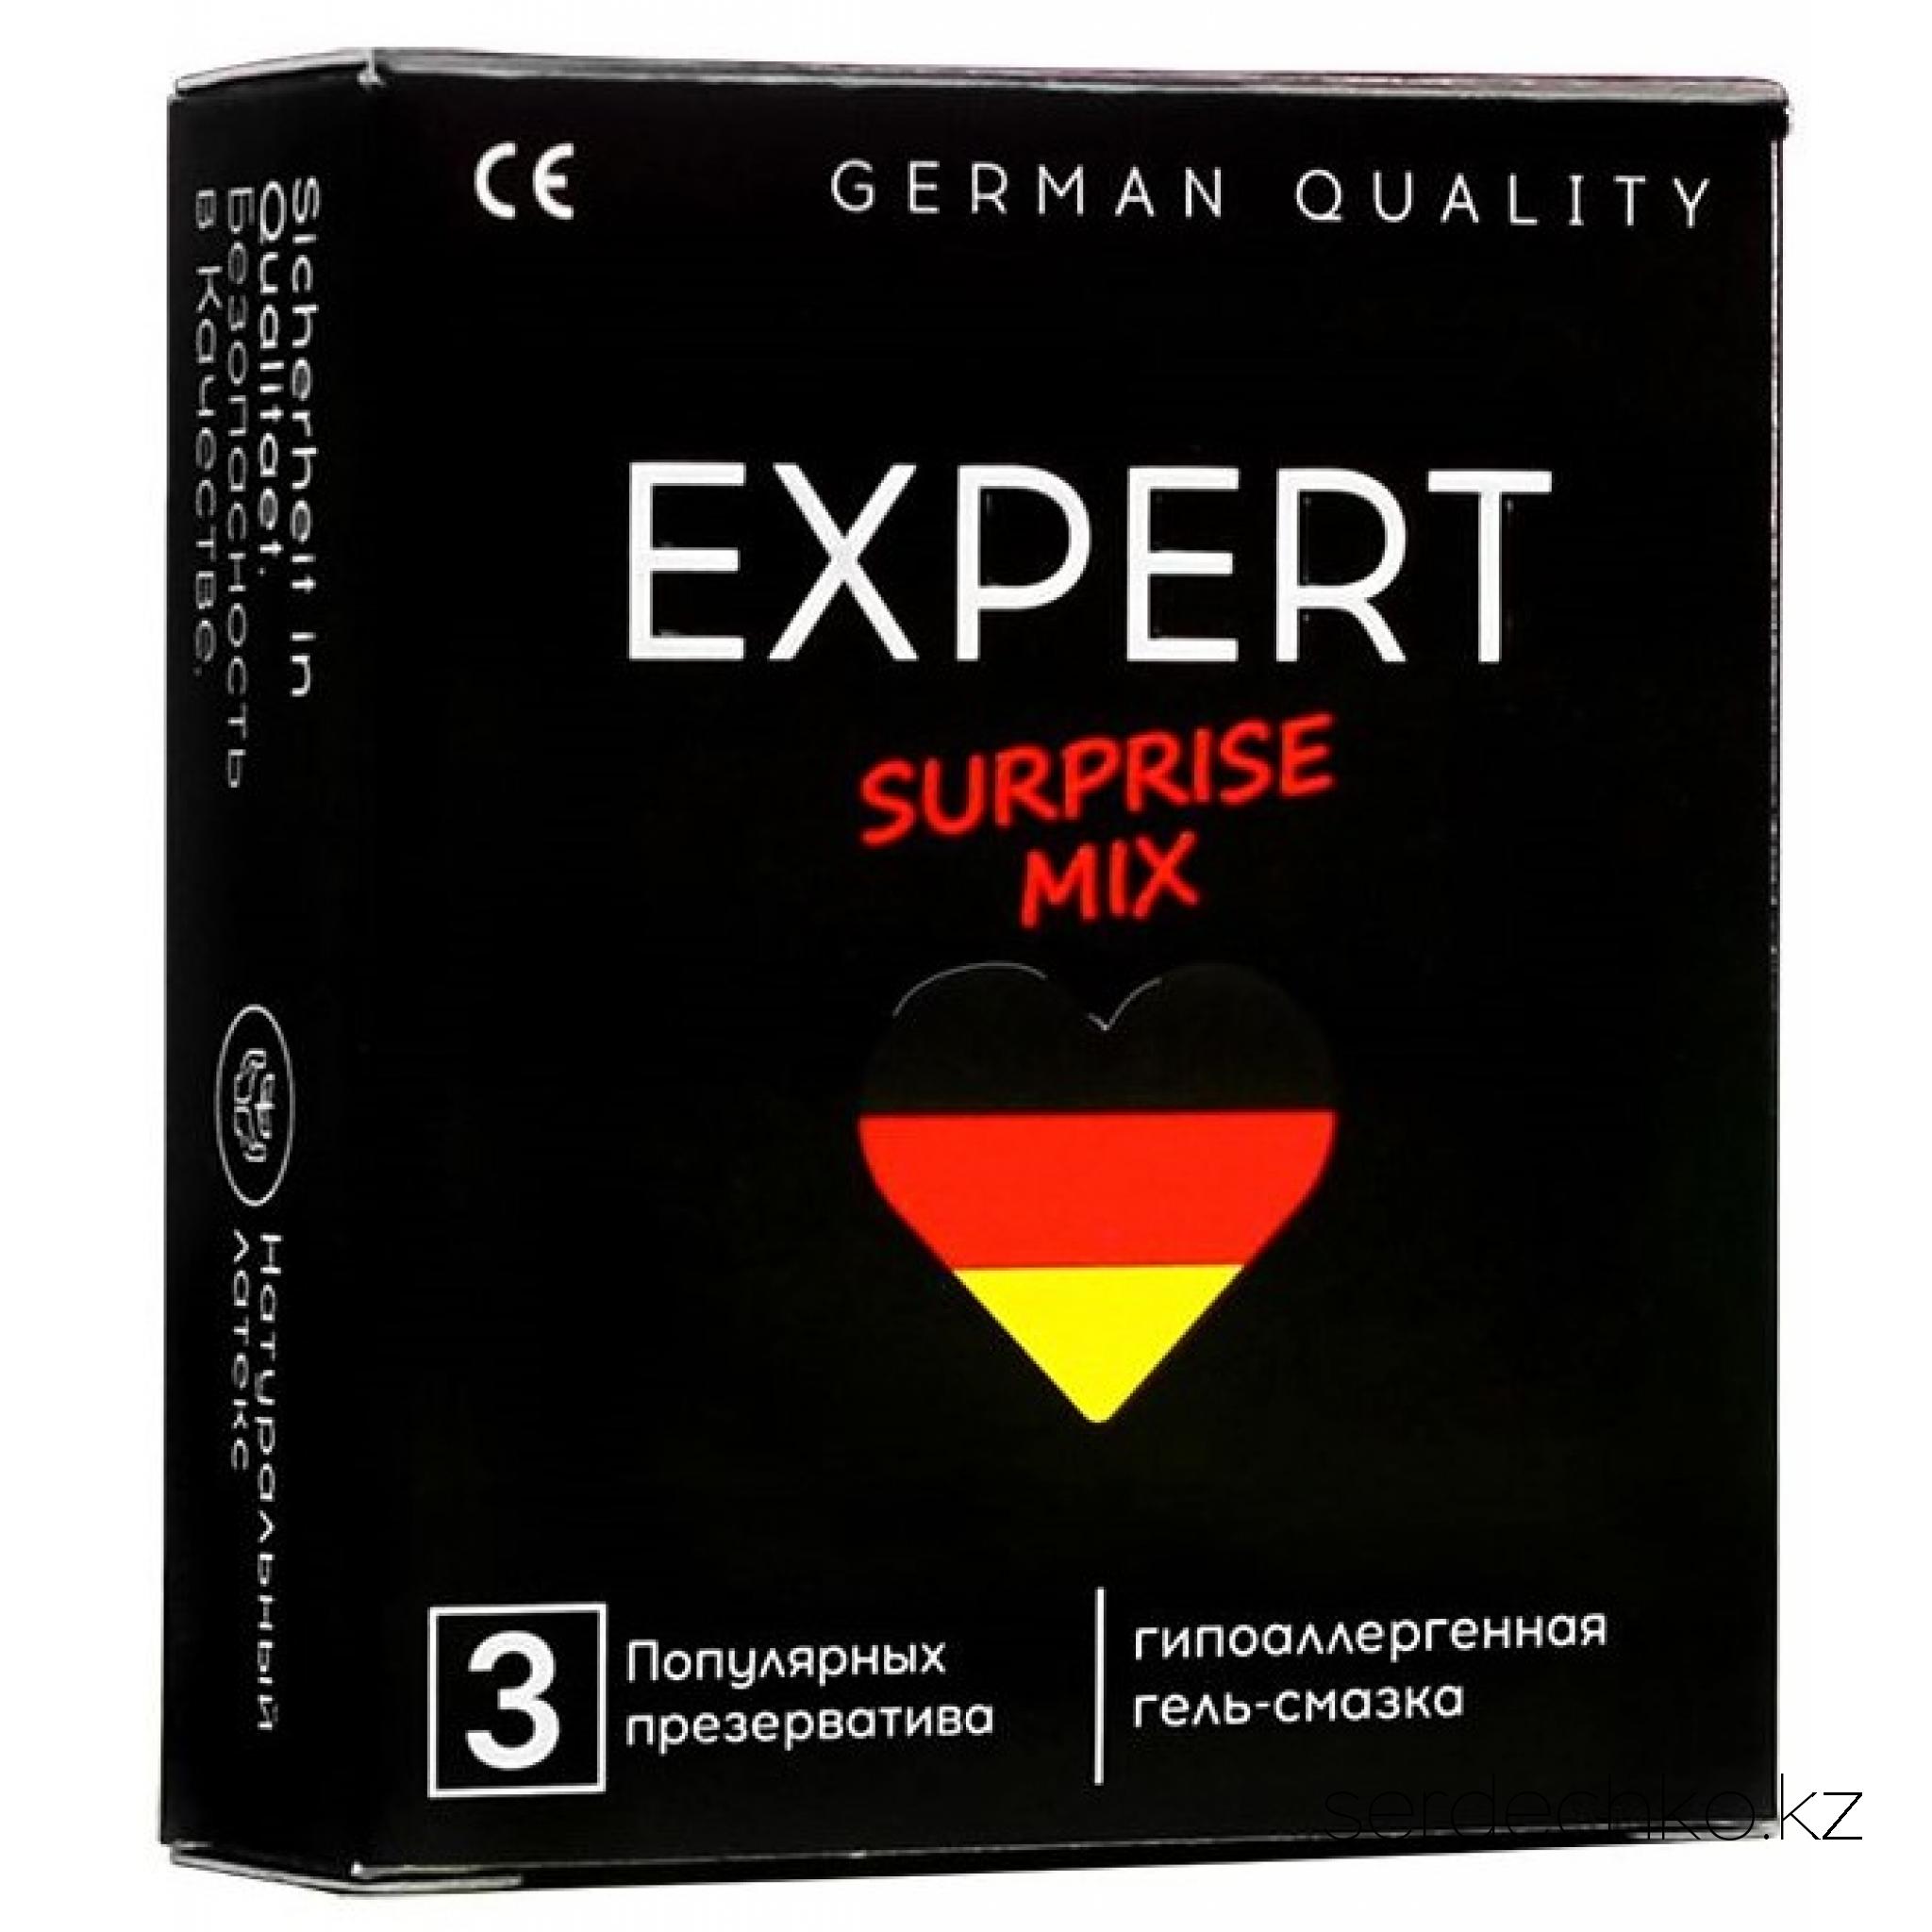 ПРЕЗЕРВАТИВЫ EXPERT SURPRISE MIX № 3 (МИКС), 3 штуки, 
	SURPRISE MIX состоит из самых популярных презервативов EXPERT. Он внесёт в ваши отношения абсолютно новую волну эмоций.
